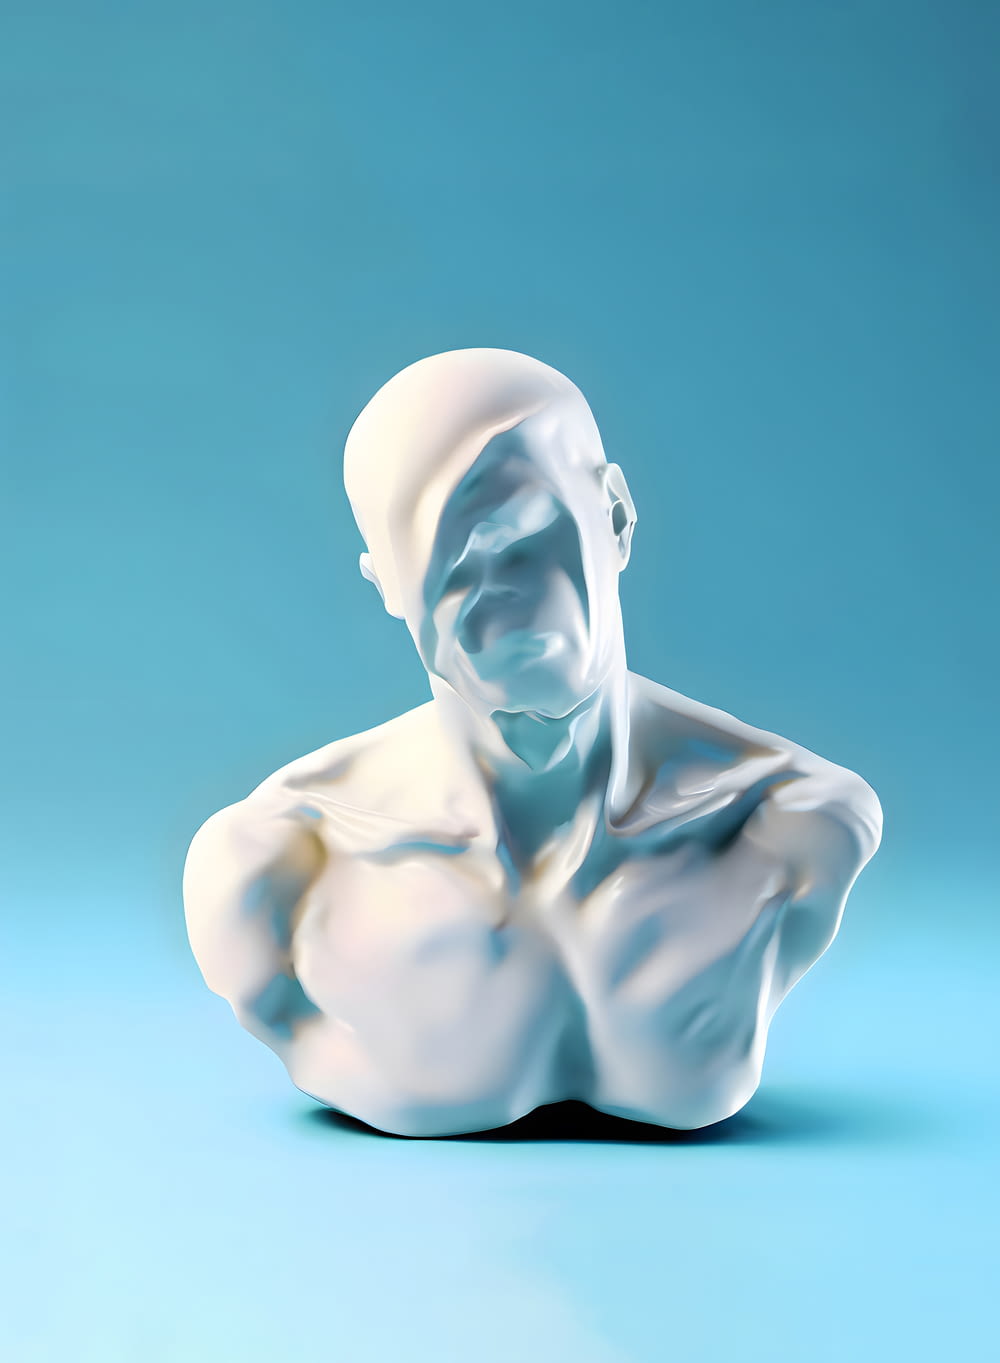 eine weiße Skulptur eines Mannes, der auf einer blauen Fläche sitzt